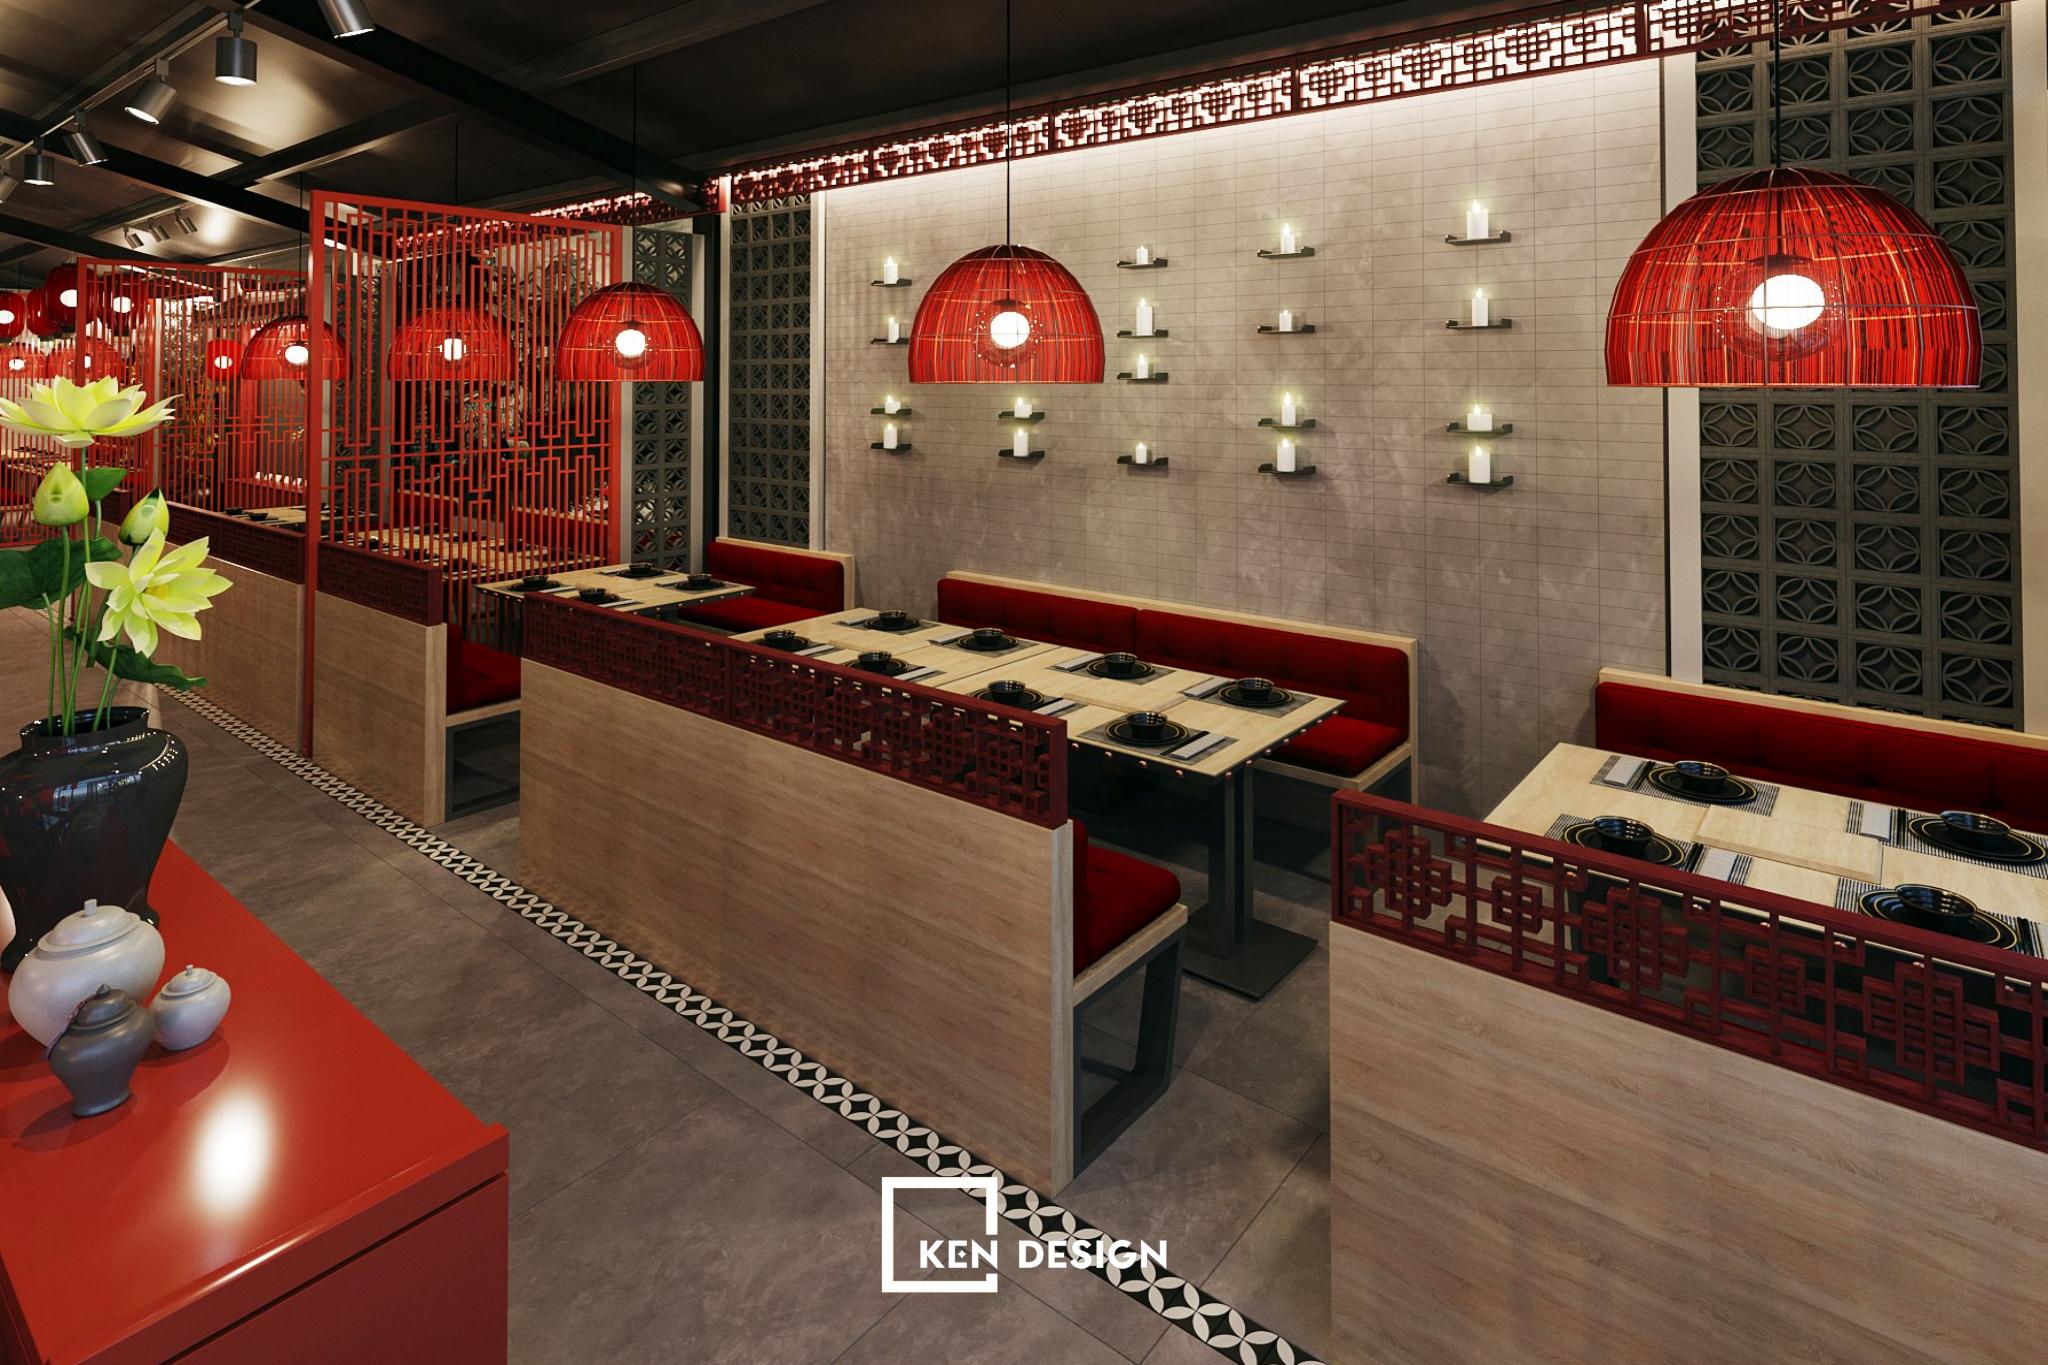 Đèn lồng kiểu dáng đơn giản trong thiết kế nhà hàng Fenghuang